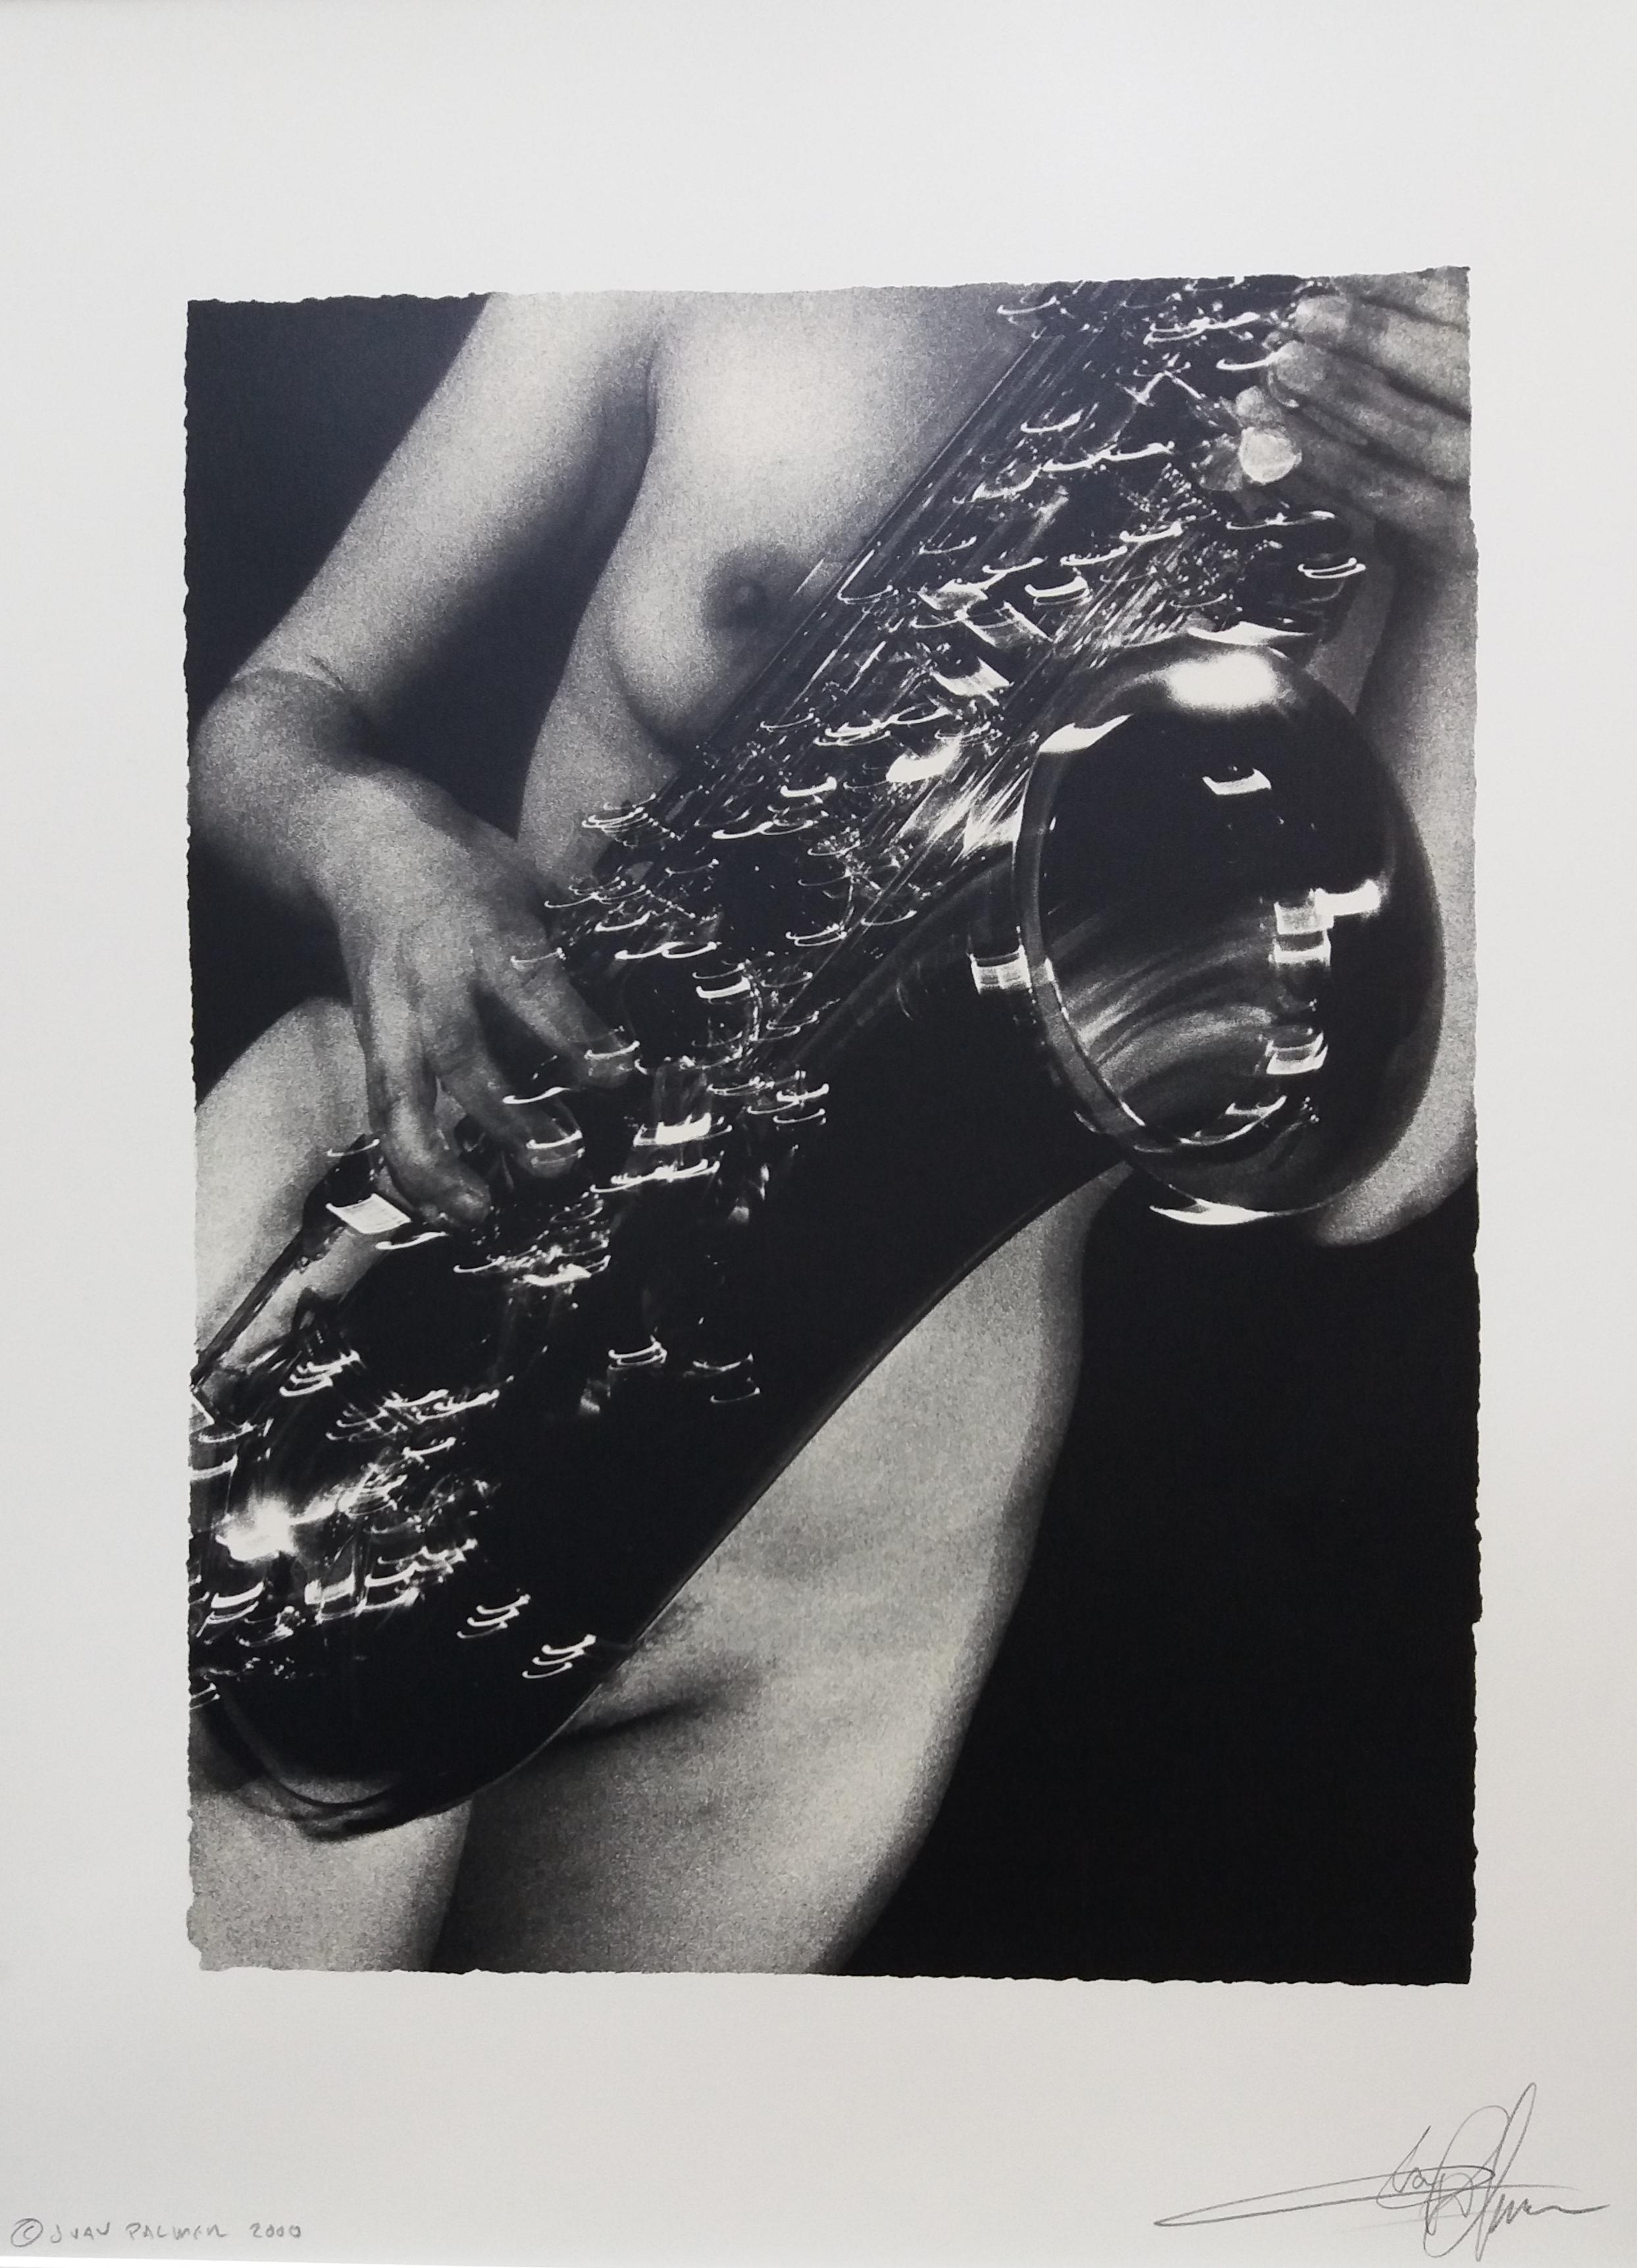 J PALMER   Naked Sax künstlerische Fotografie – Photograph von JUAN PALMER